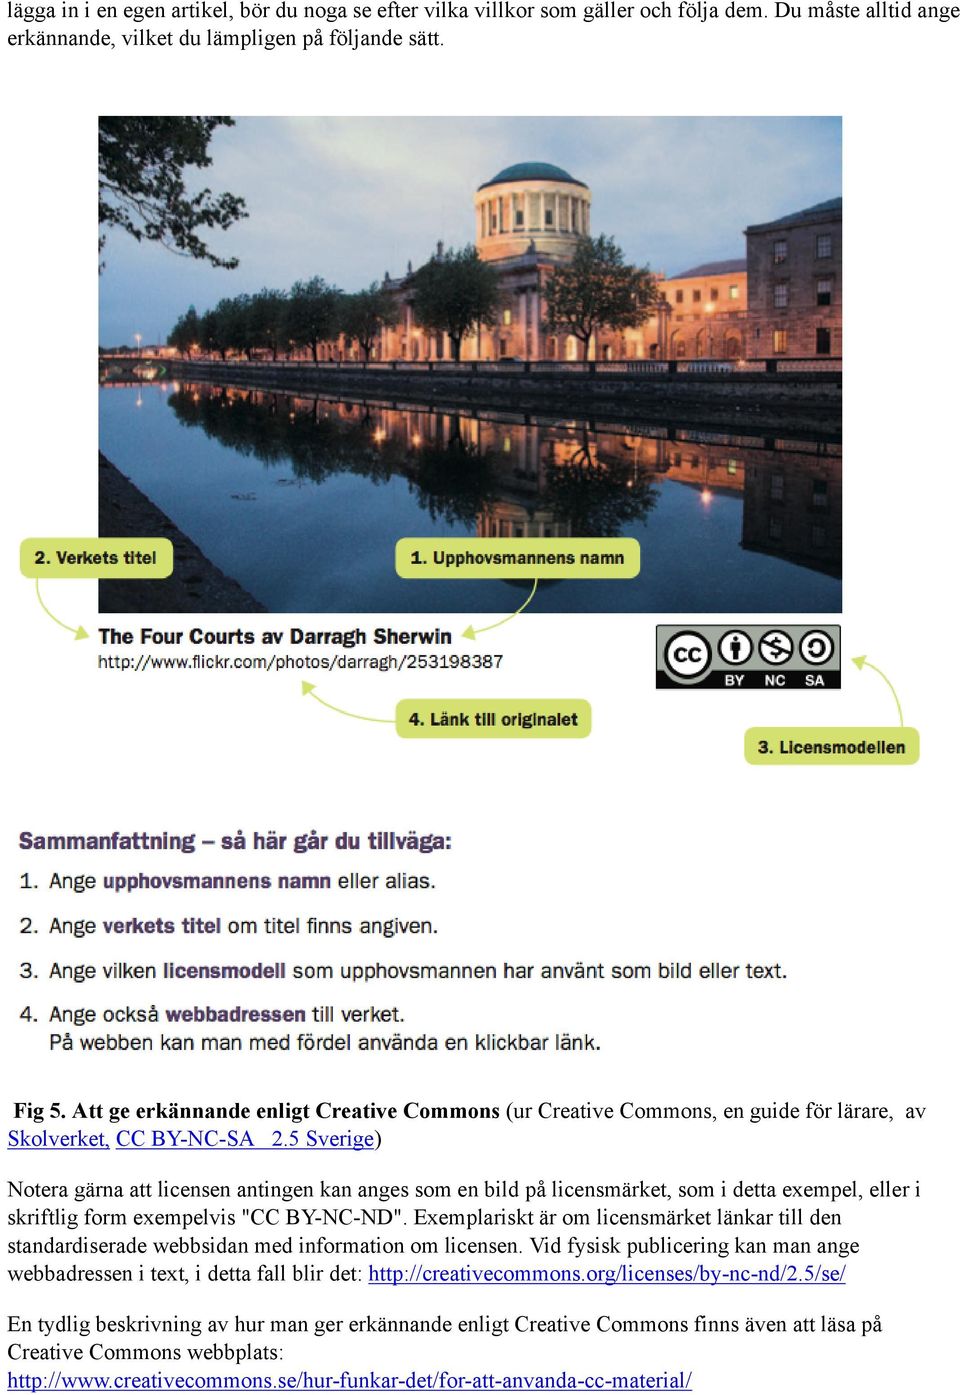 5 Sverige) Notera gärna att licensen antingen kan anges som en bild på licensmärket, som i detta exempel, eller i skriftlig form exempelvis "CC BY-NC-ND".